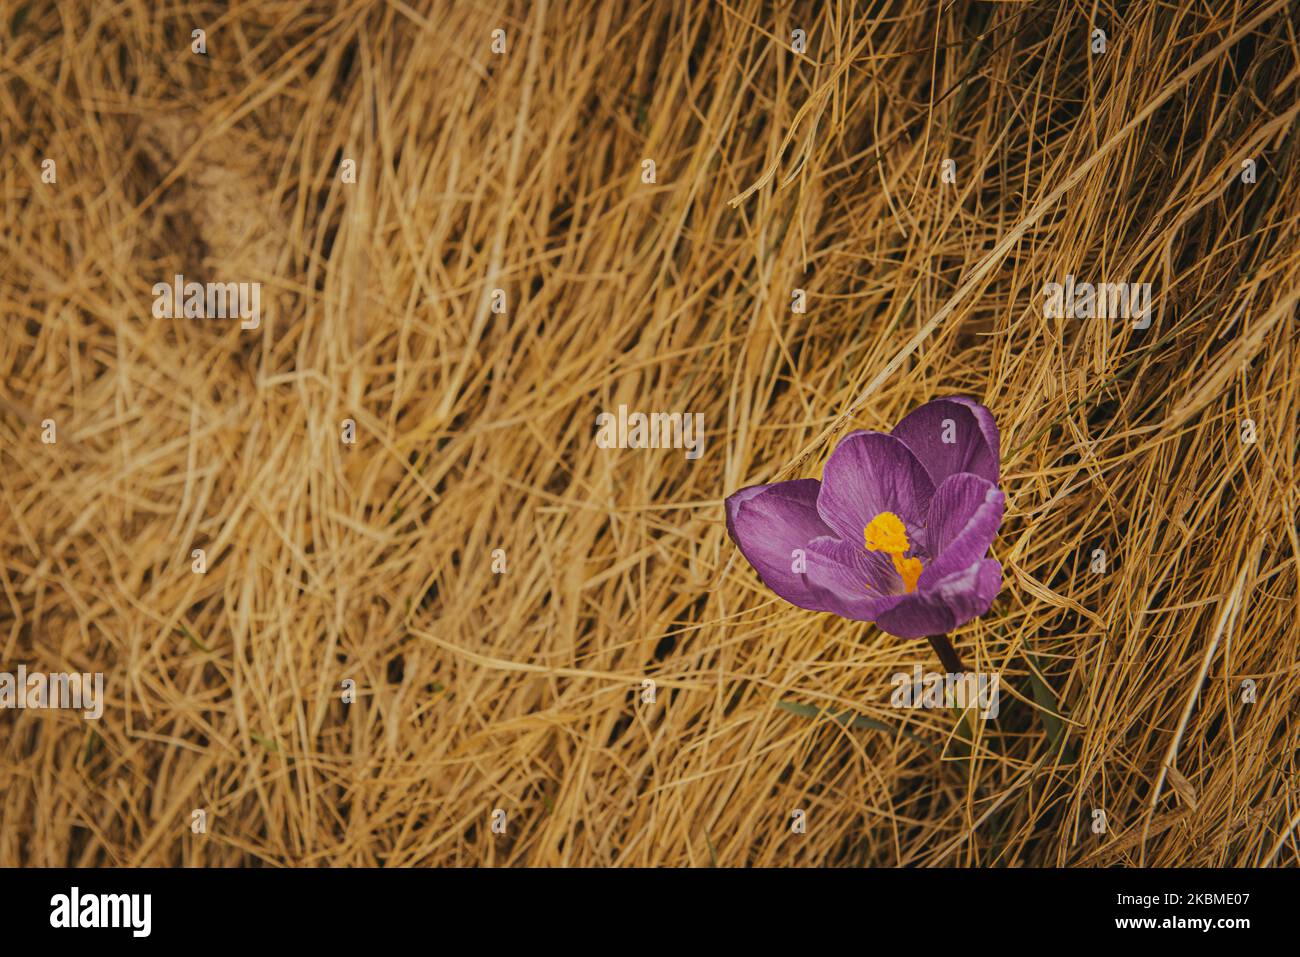 Tendre Crocus dans les montagnes. Premières fleurs au printemps parmi l'herbe jaune. Image avec une faible profondeur de champ. Fleur aux pétales violets Banque D'Images